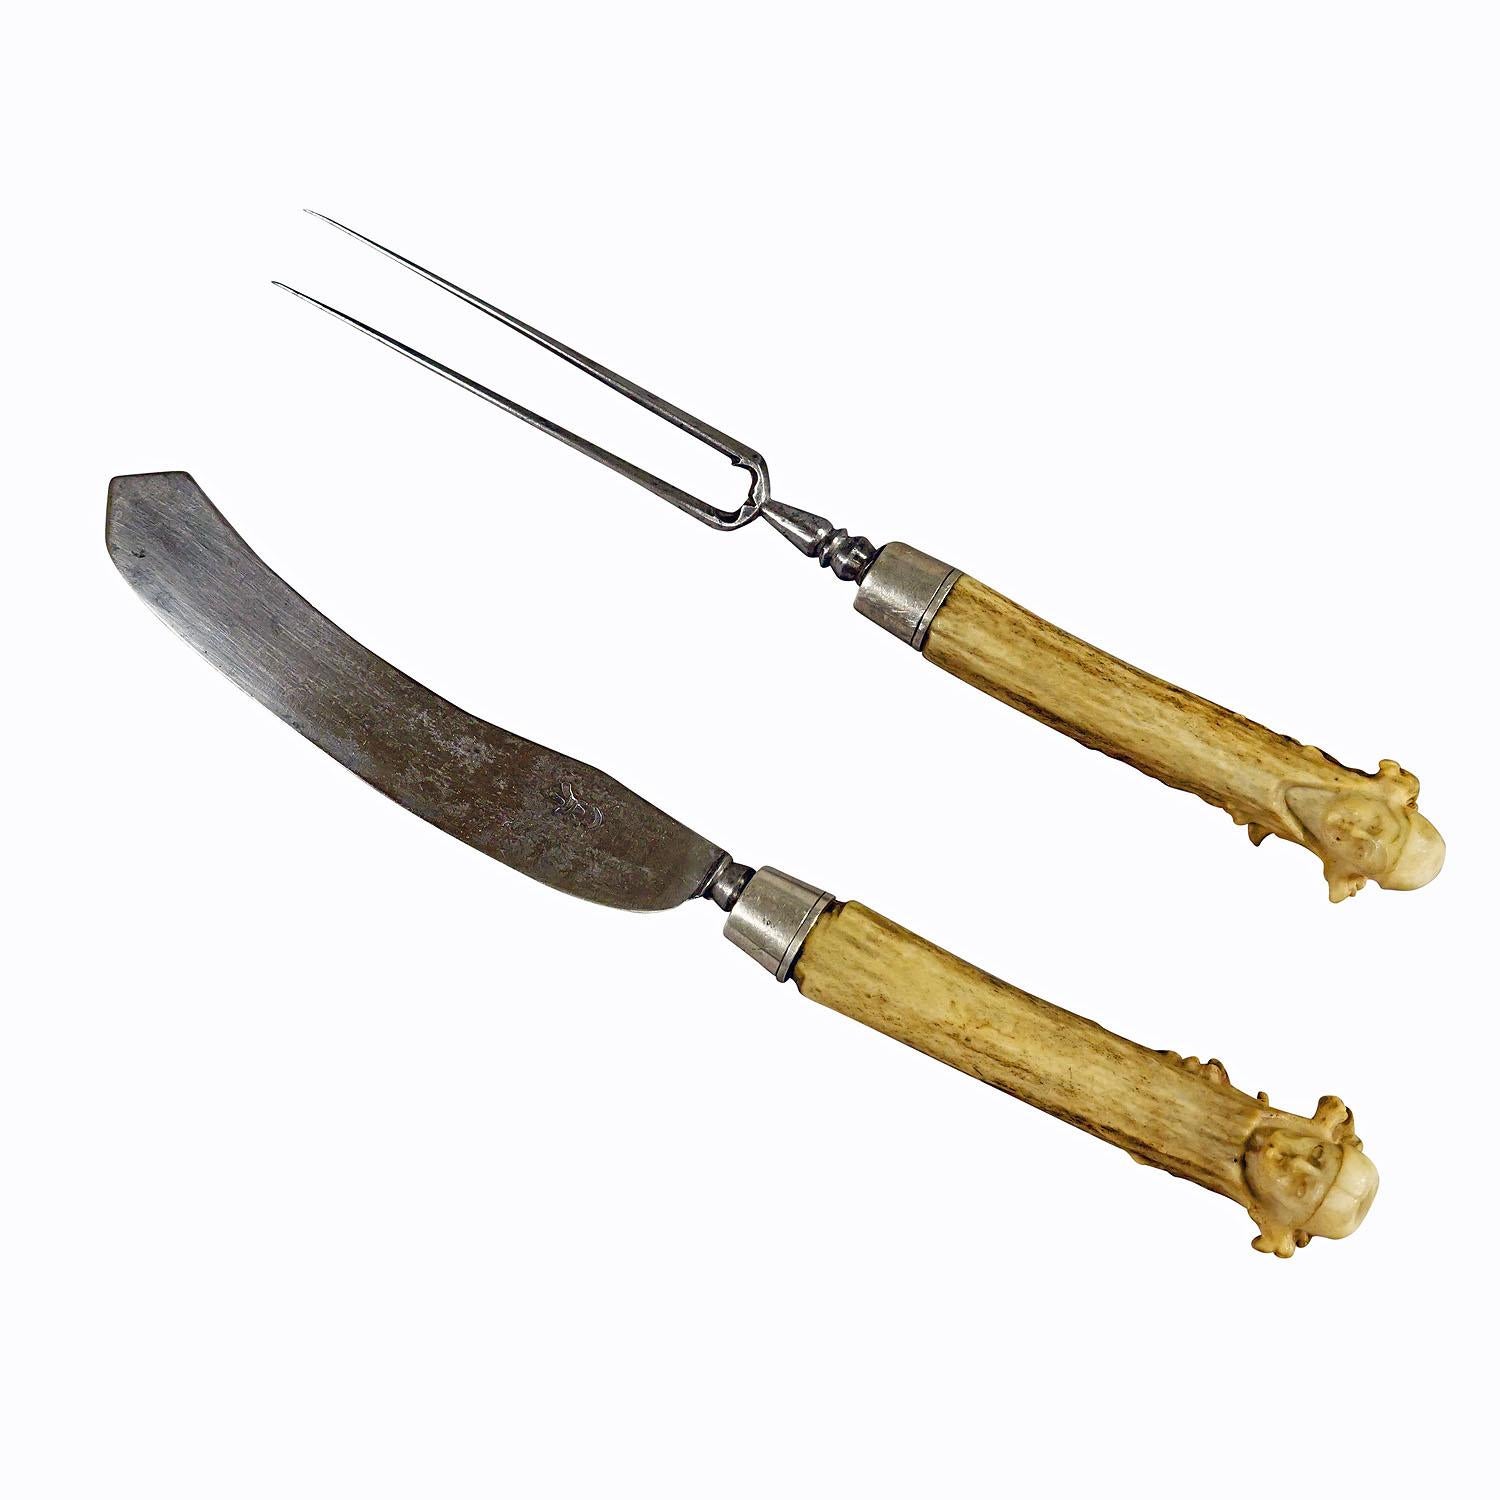 Ensemble ancien de couverts rustiques Carter avec poignées en corne sculptées 18ème siècle

Un rare ensemble antique de couteaux et de fourchettes comme couverts de service. Les poignées sont faites de cornes de cerf avec, à leur extrémité, des